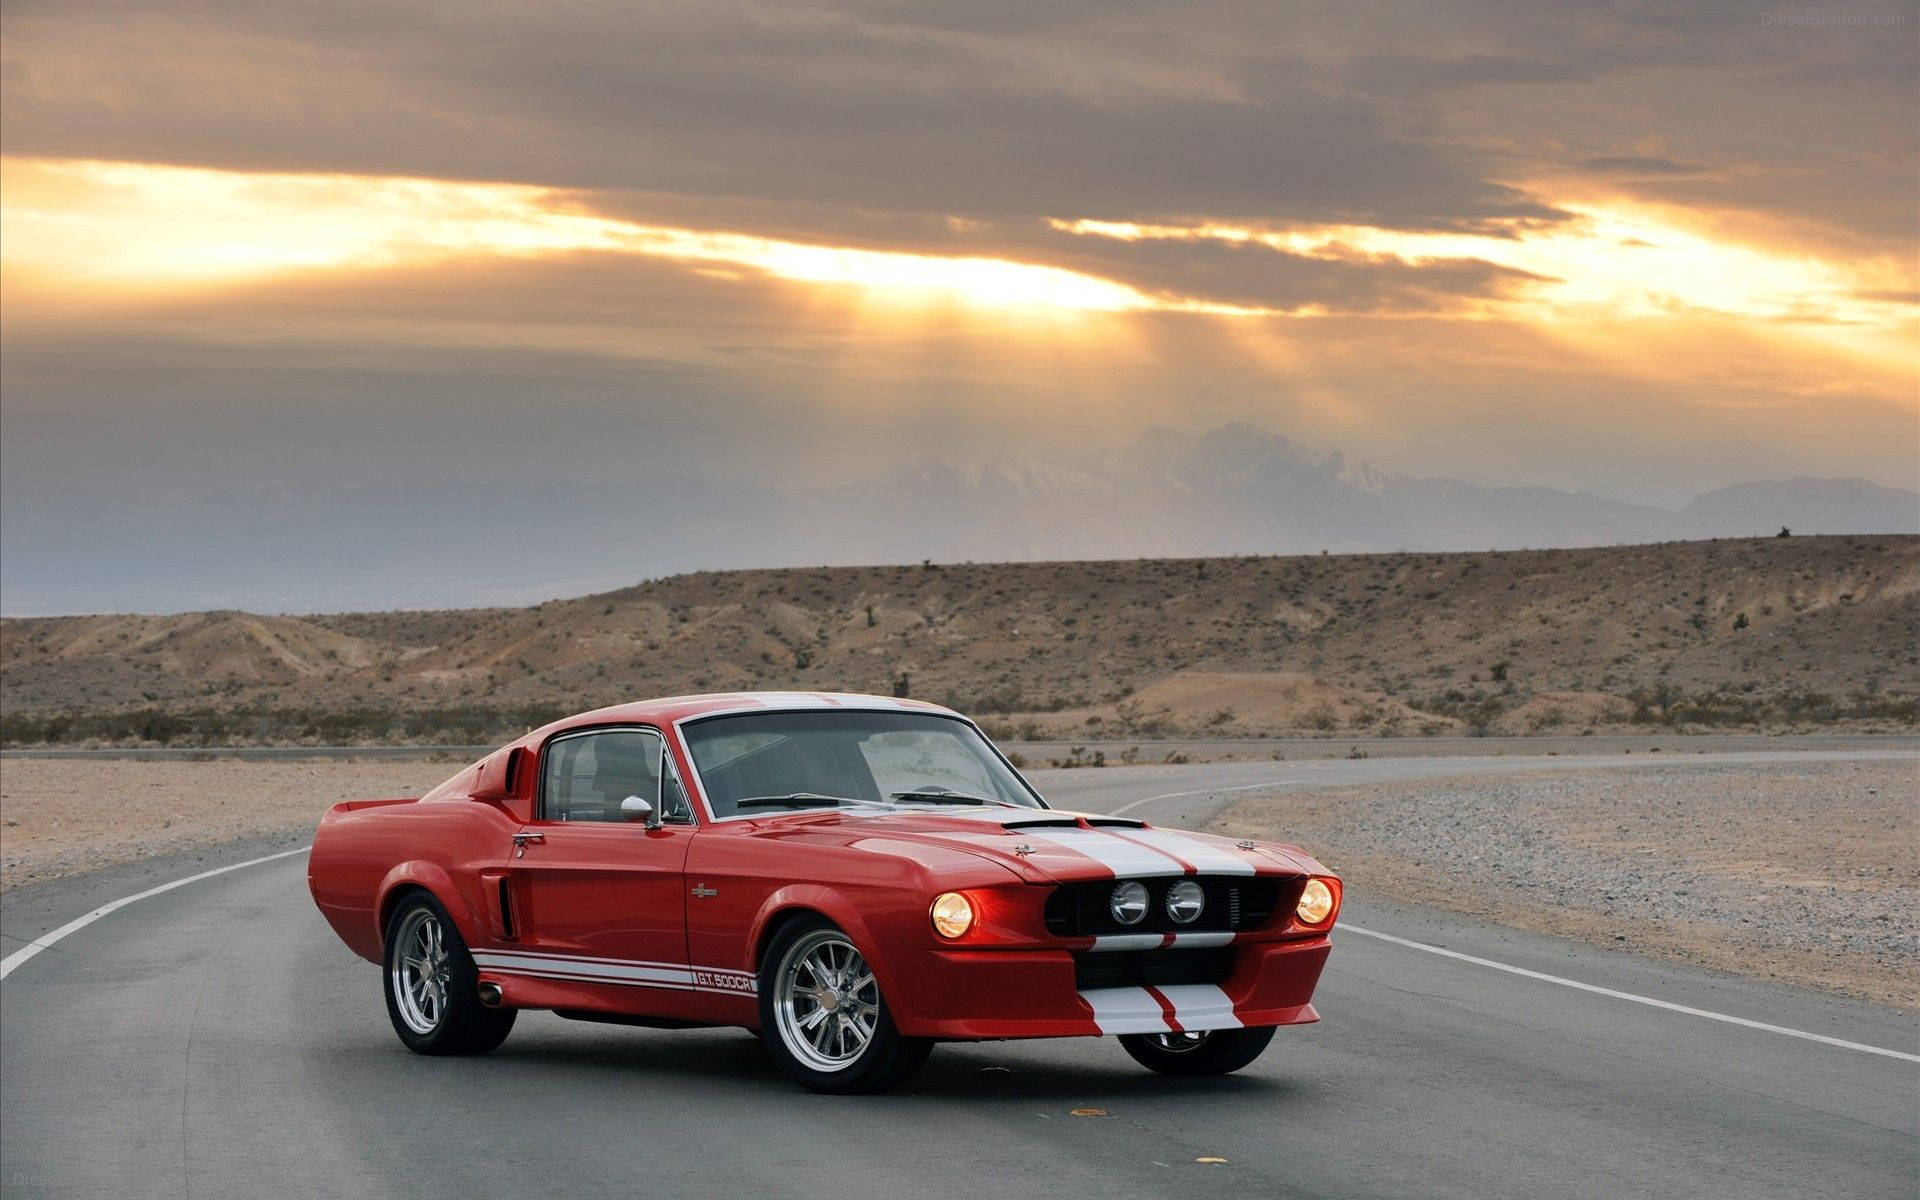 Marlboro Red Shelby Mustang Wallpaper